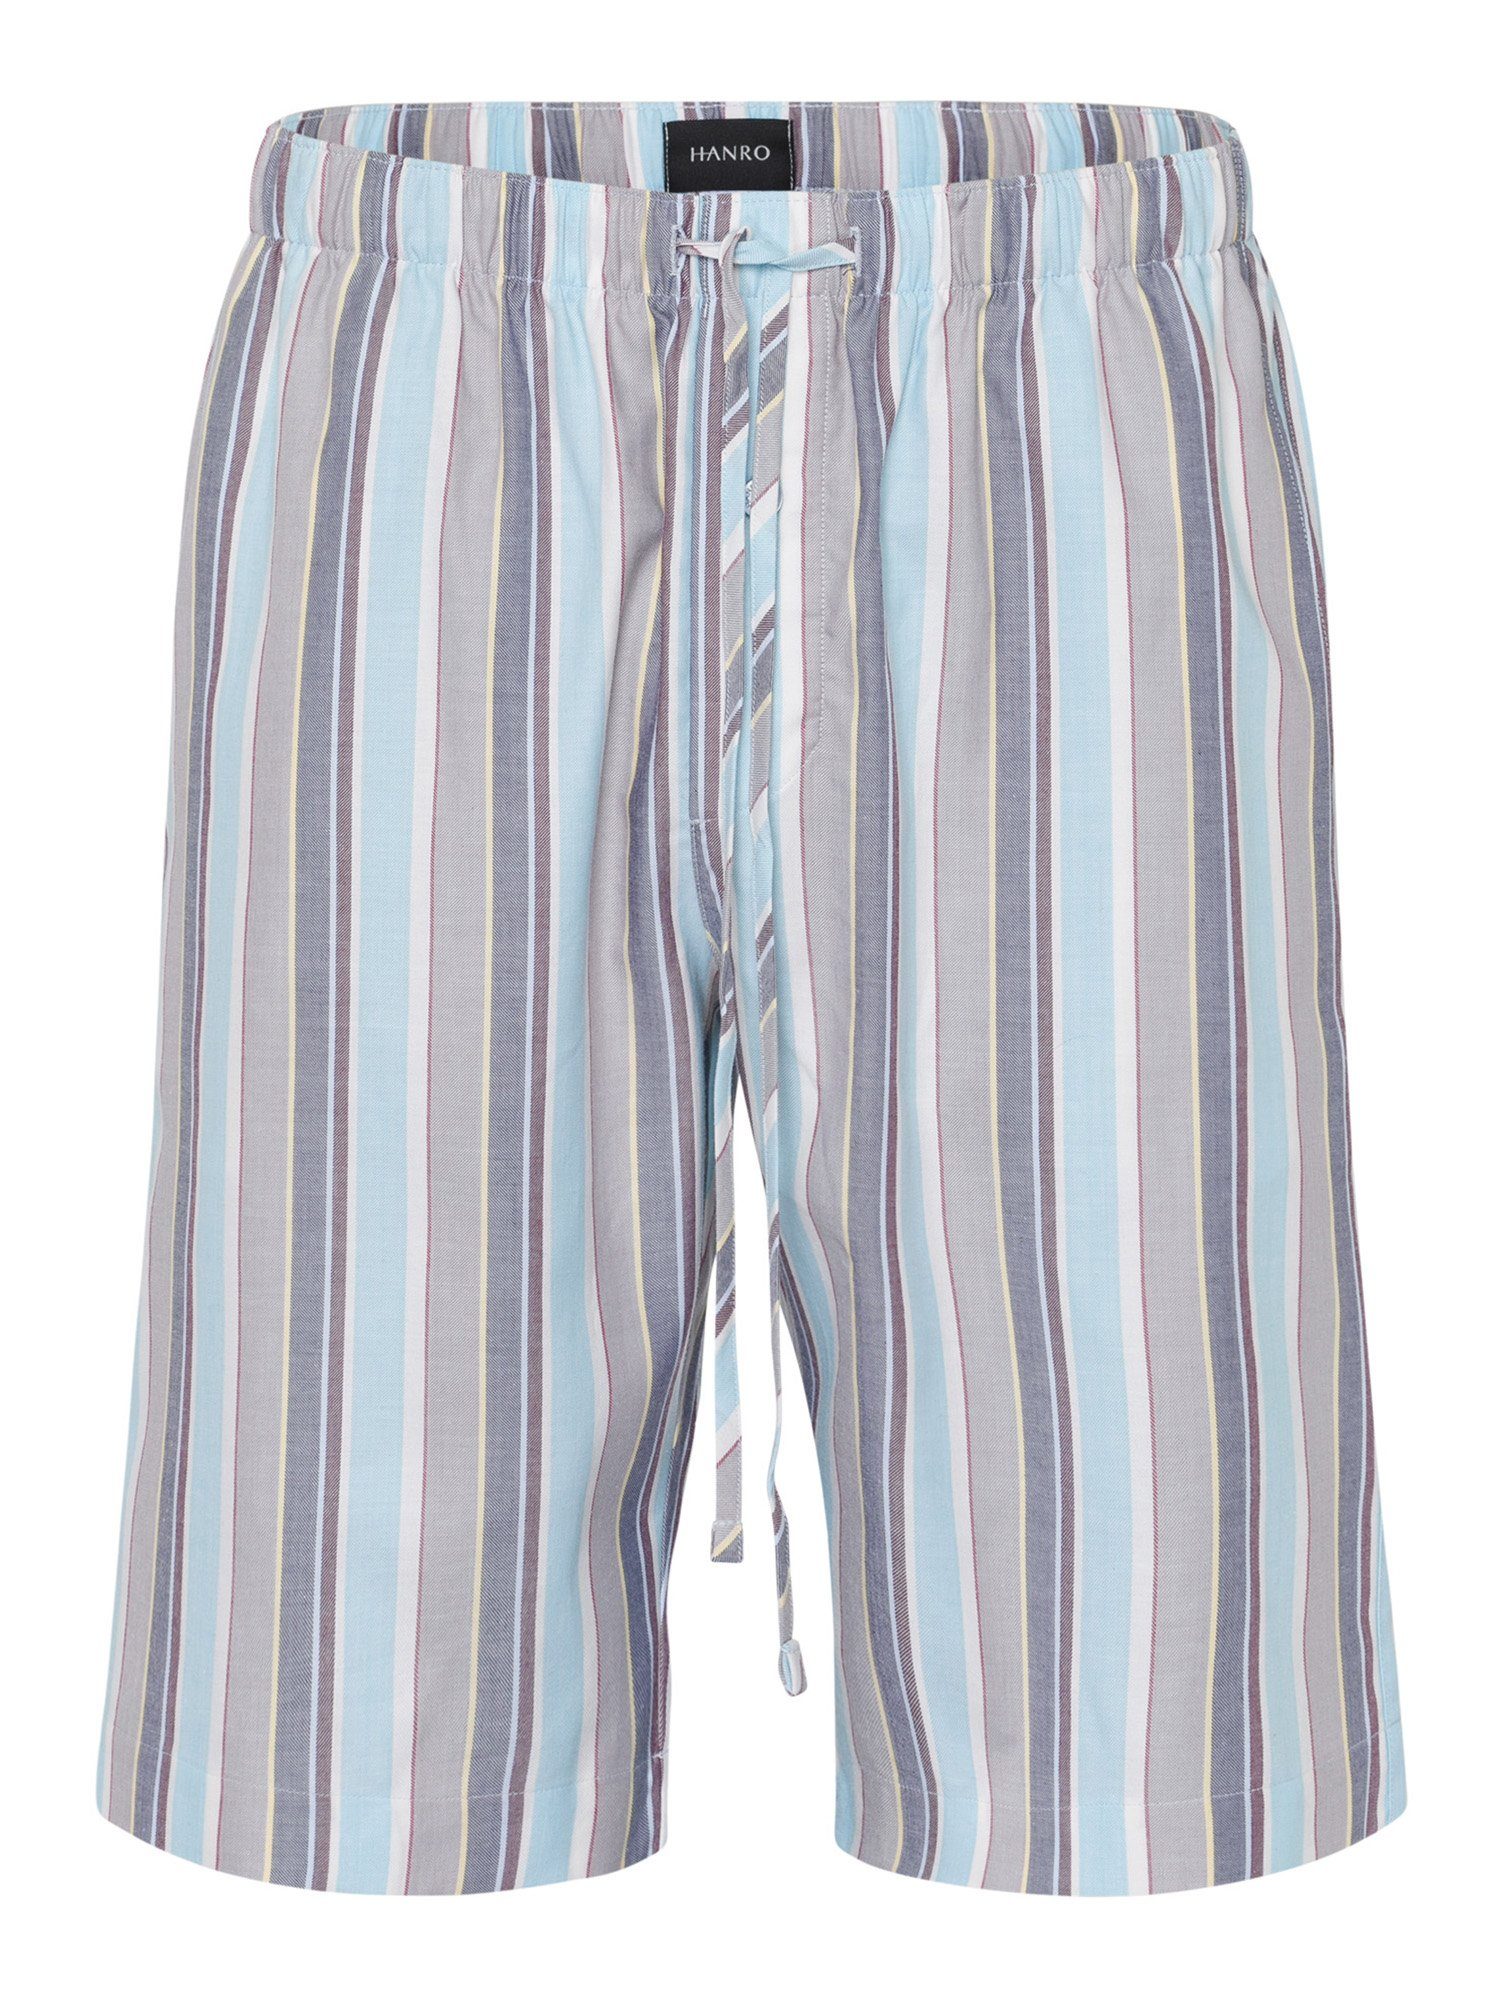 Pyjamashorts stripe & Day jaunty Night Hanro